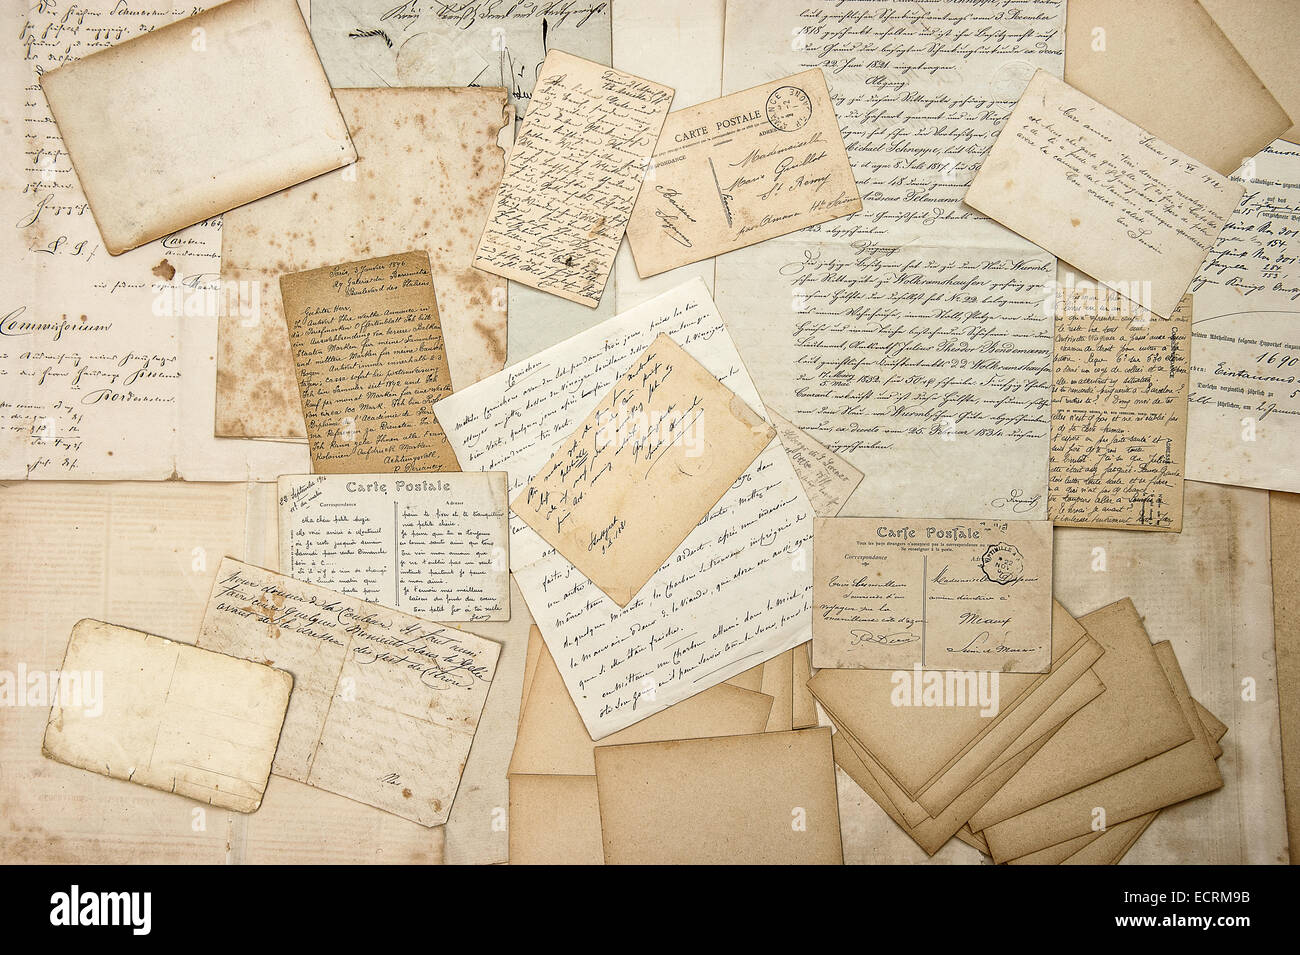 Vecchio lettere, handwritings, cartoline d'epoca, ephemera. grungy nostalgico sentimentale sullo sfondo della carta Foto Stock